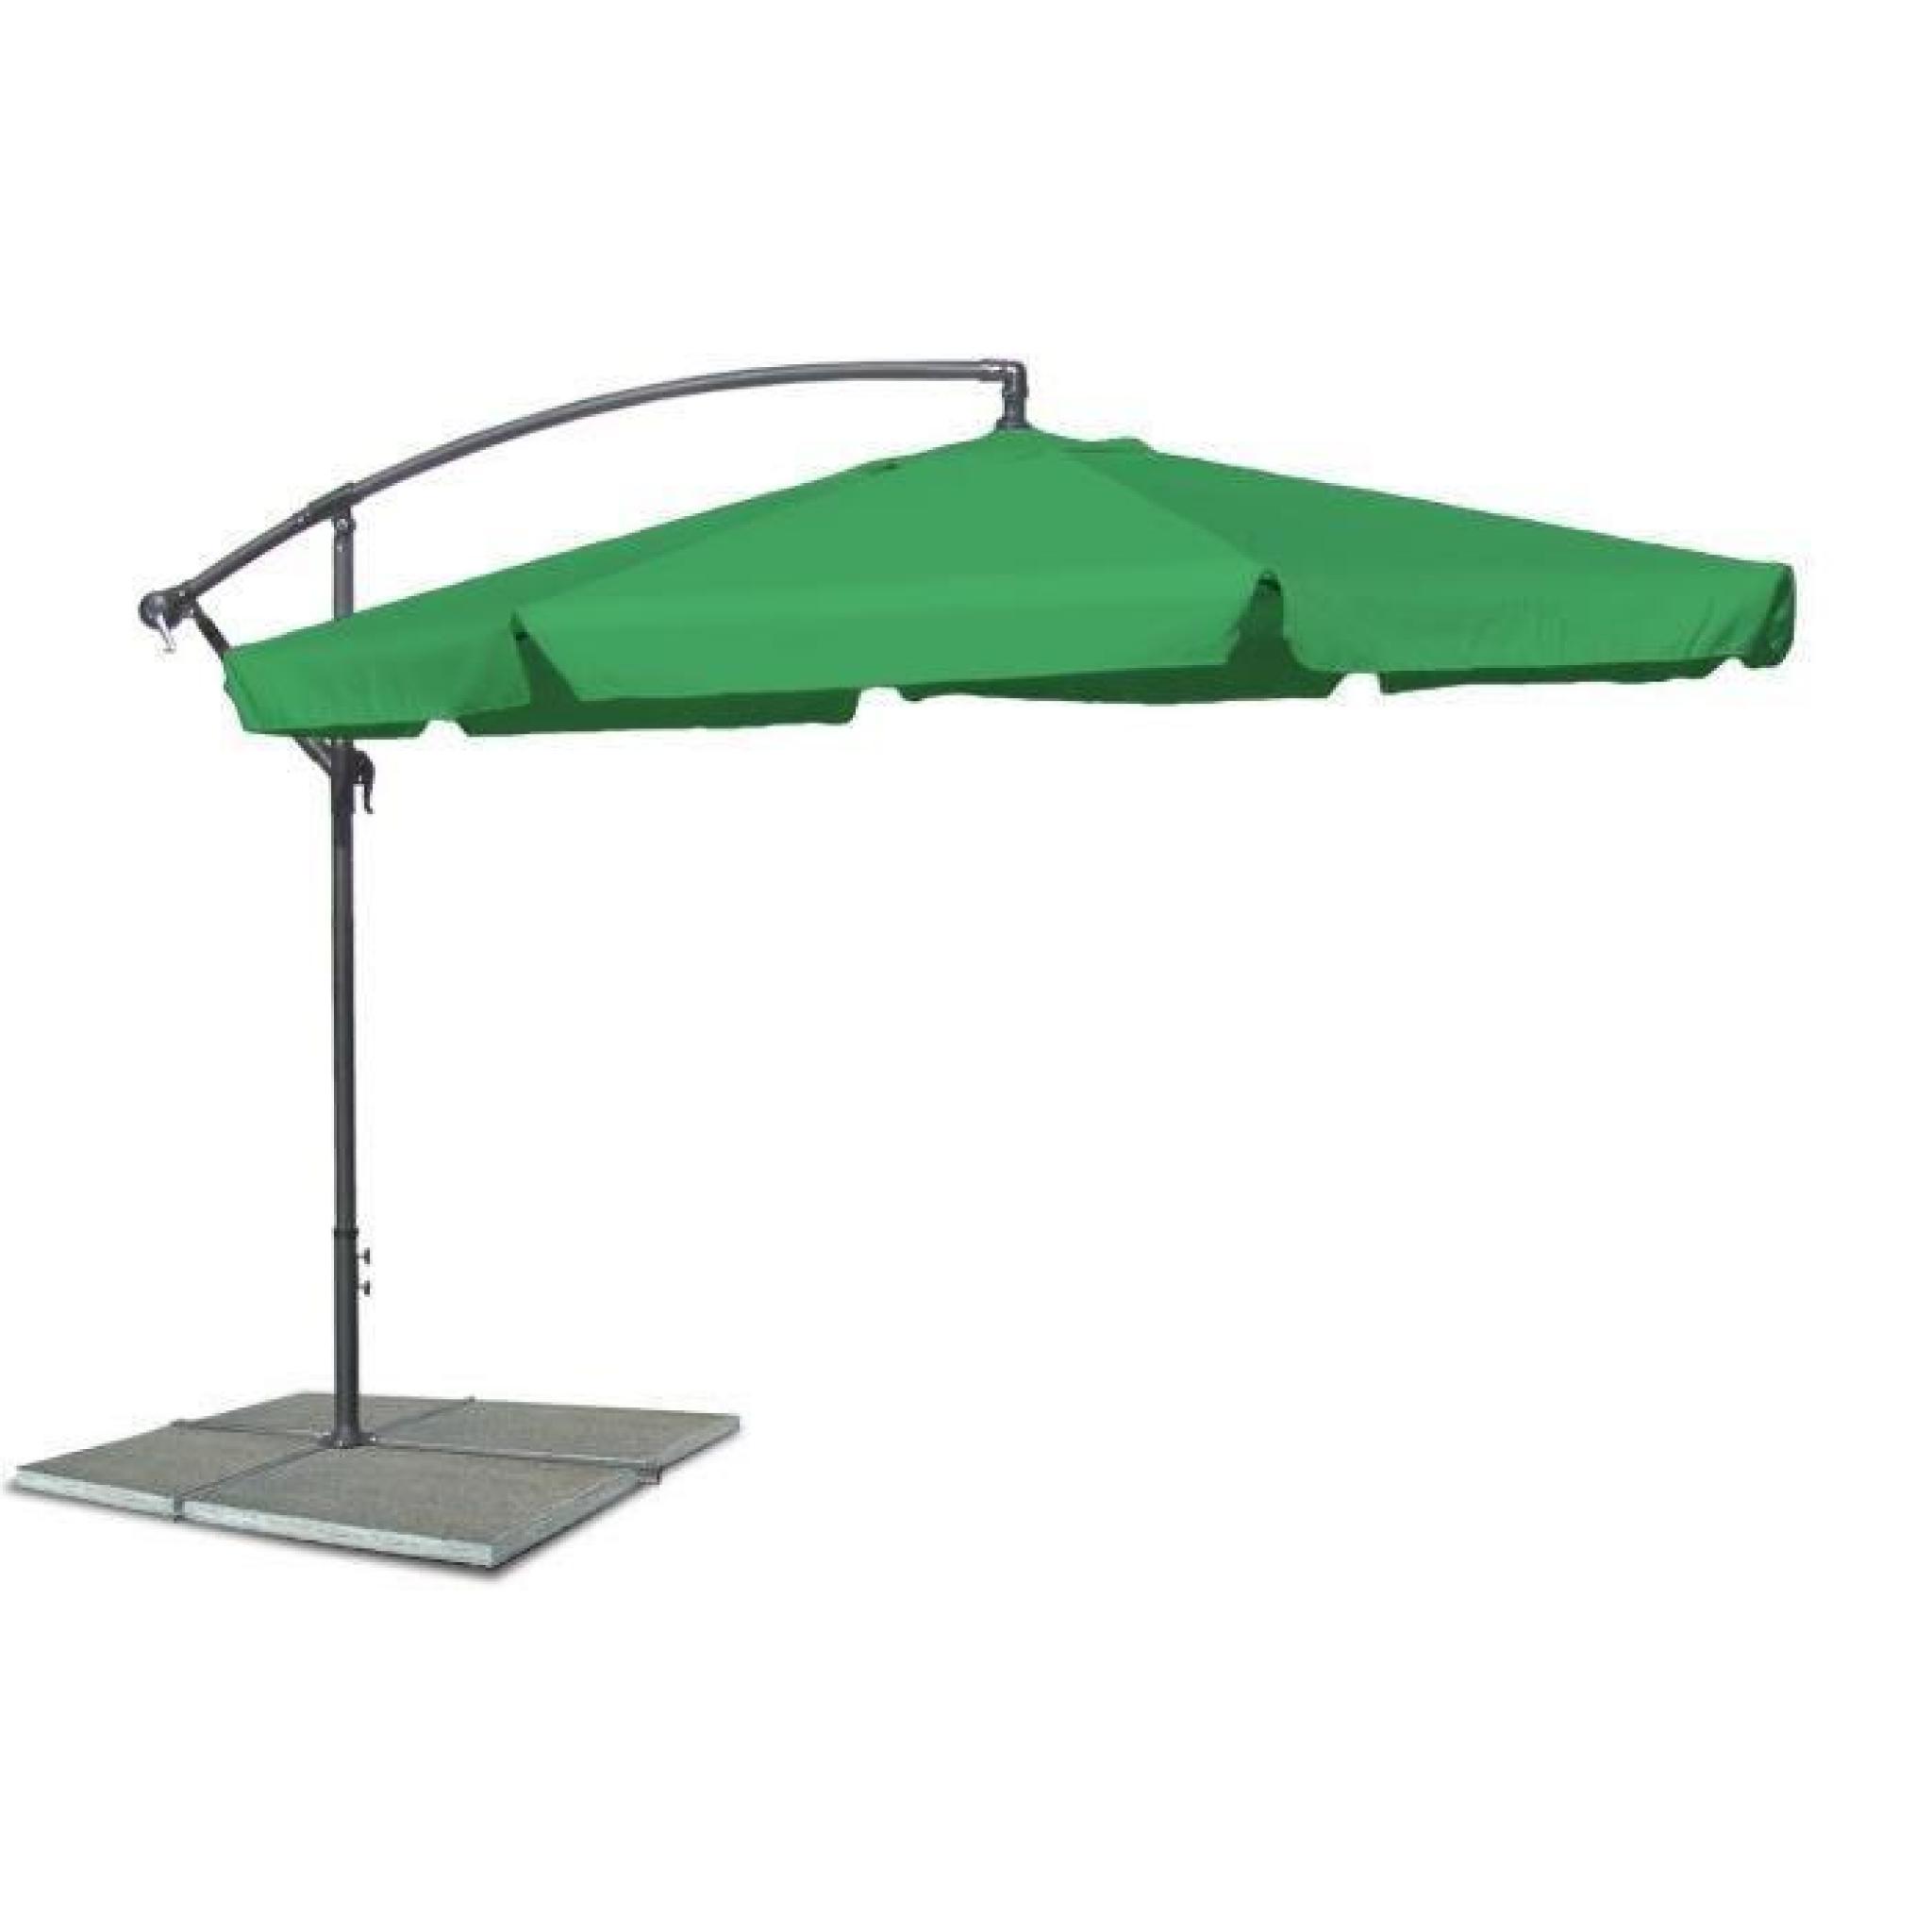 Parasol excentre, parapluie de plage avec 300 cm de diametre en vert, Materiau Polyester 160G, resistant a l'eau, croisi pas cher